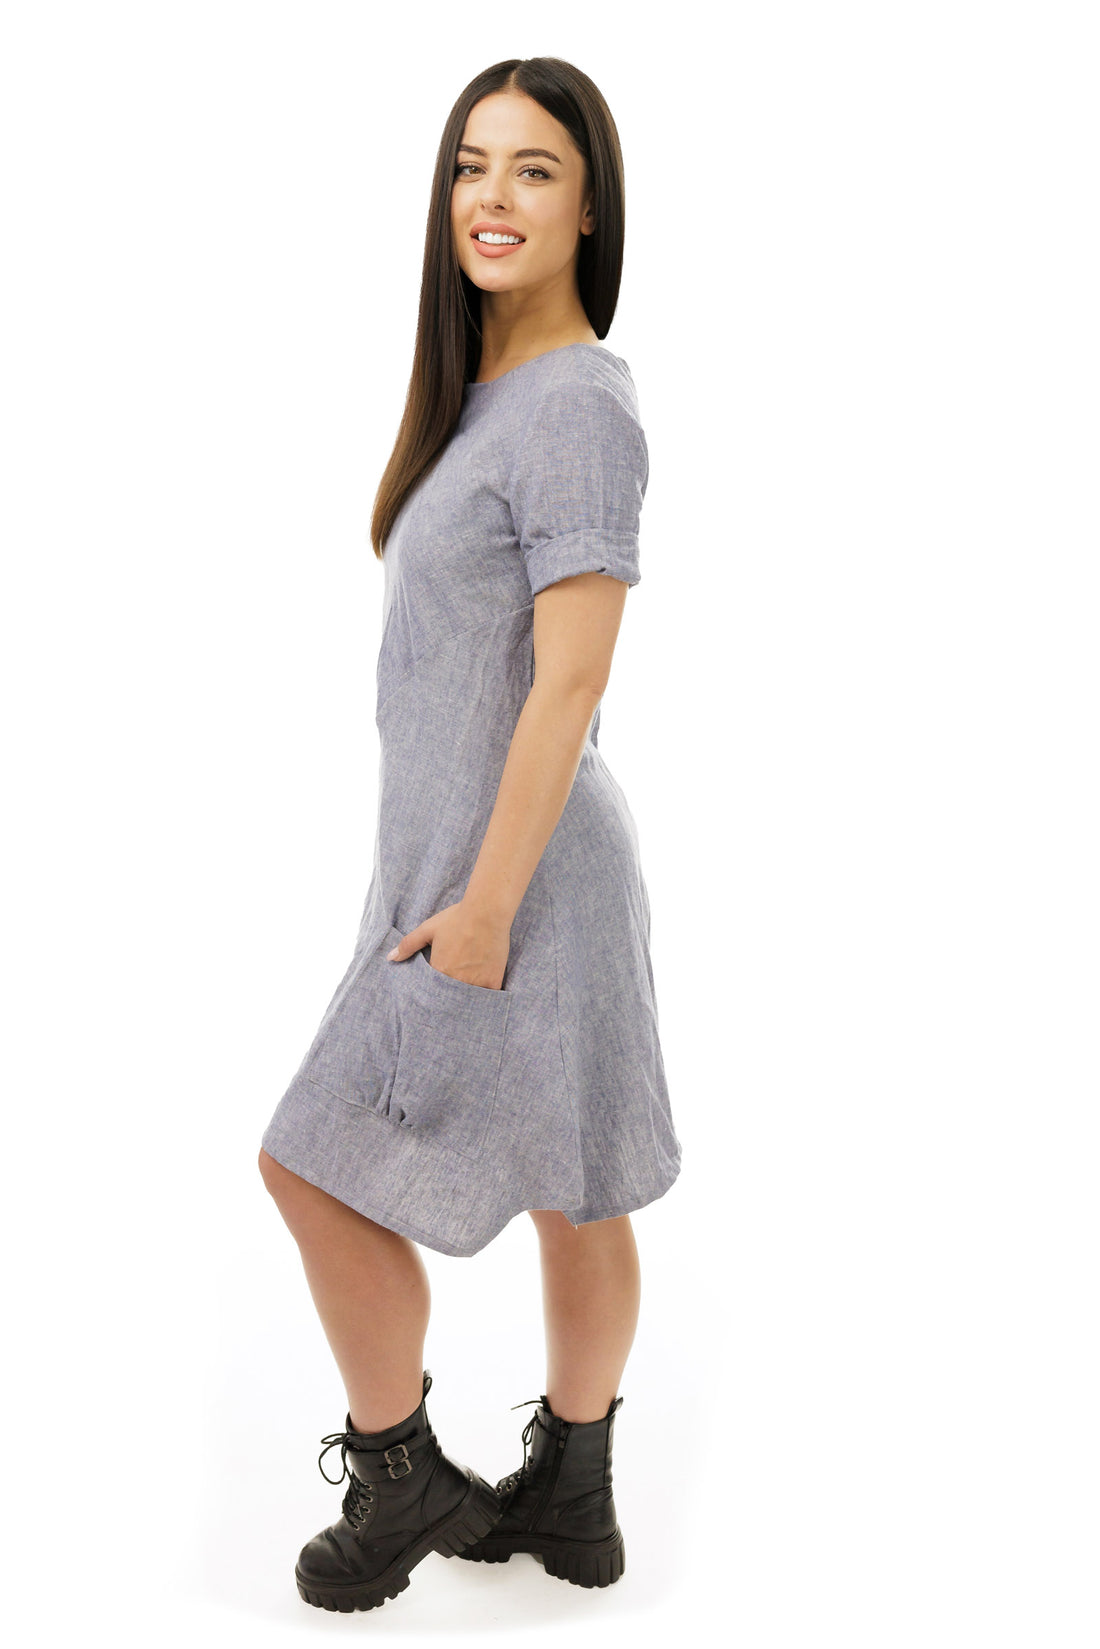 Agnes Blue pocket dress